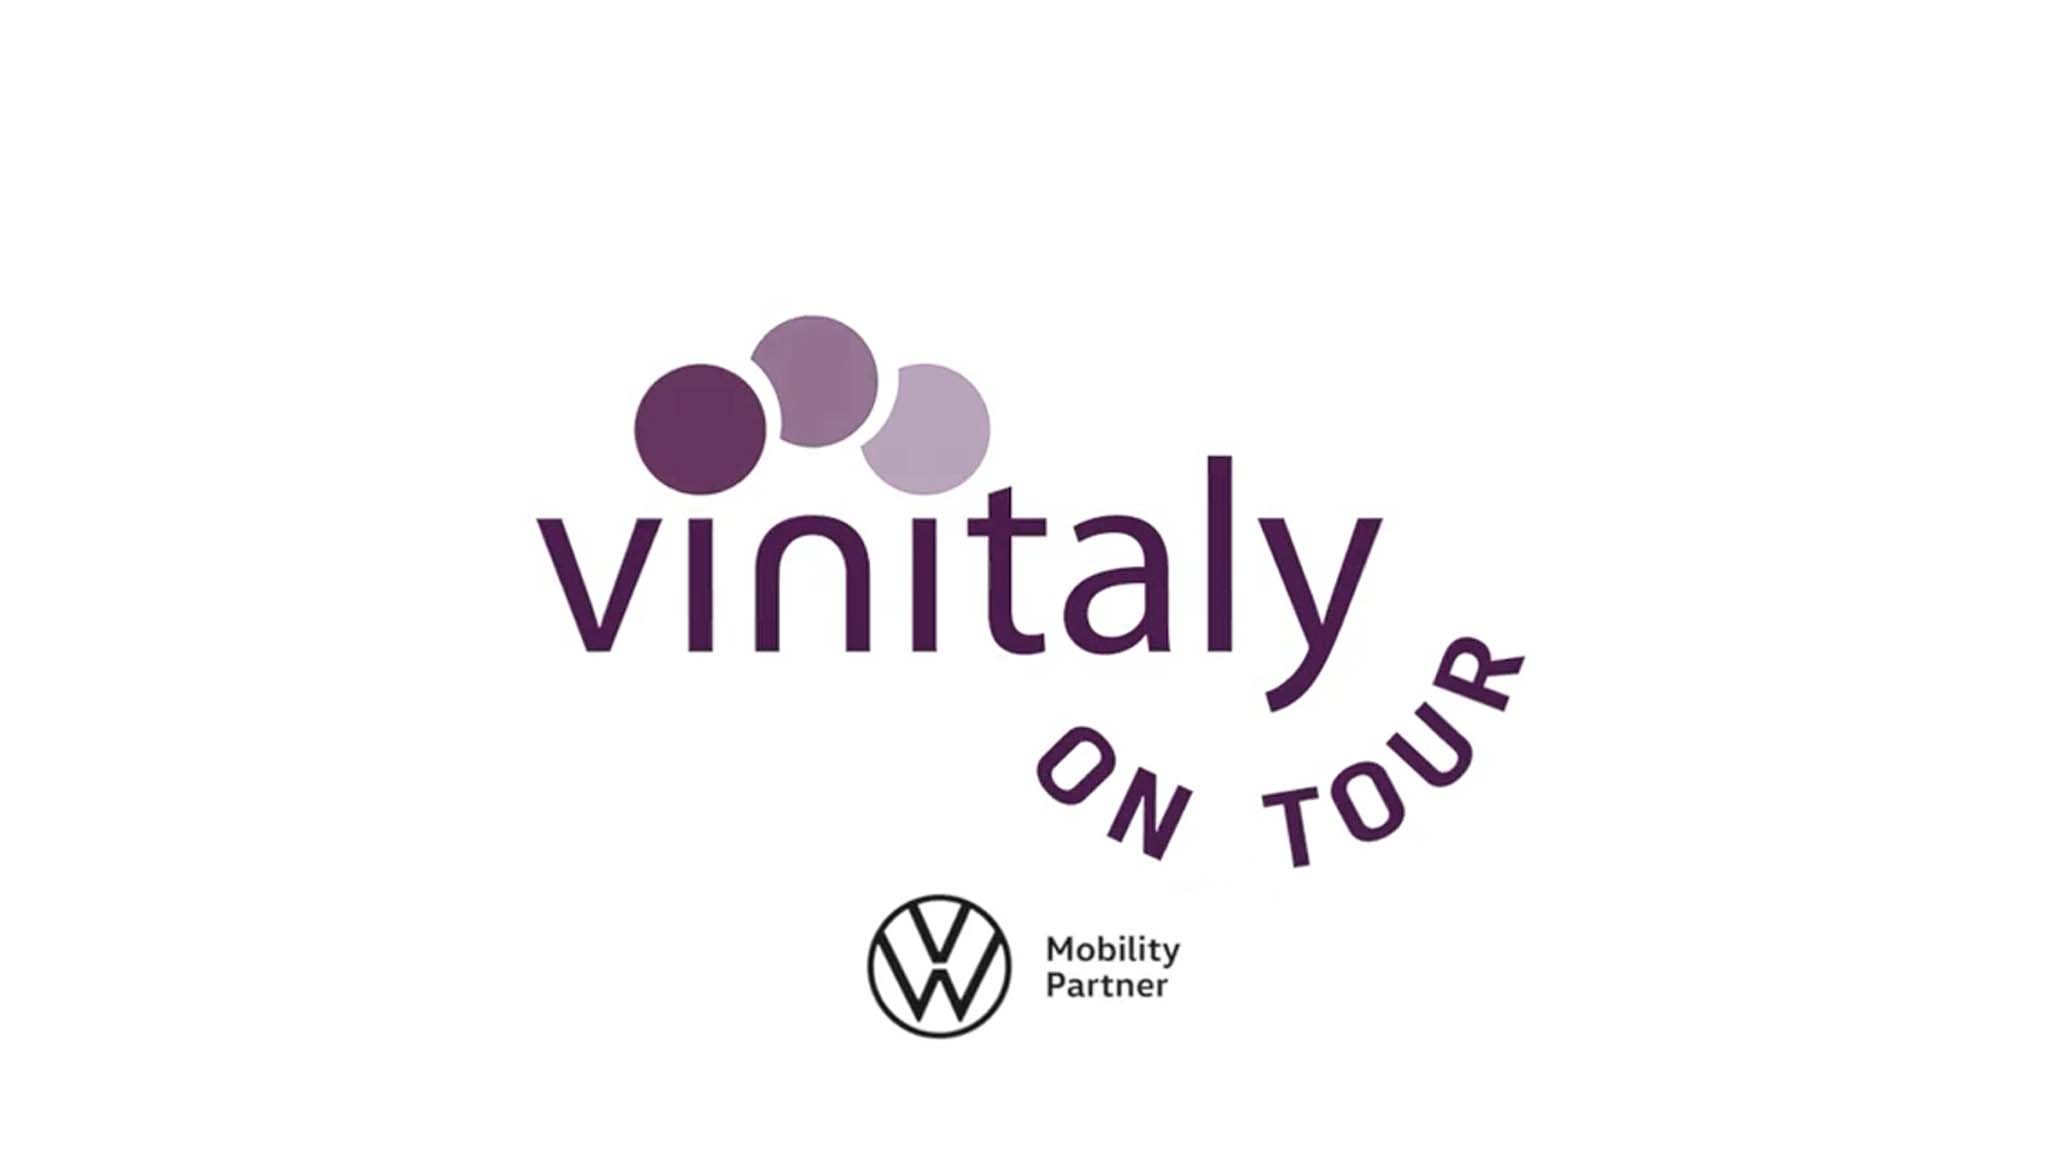 Scopri di più sull'articolo Vinitaly on Tour, un viaggio per conoscere il mondo vinicolo